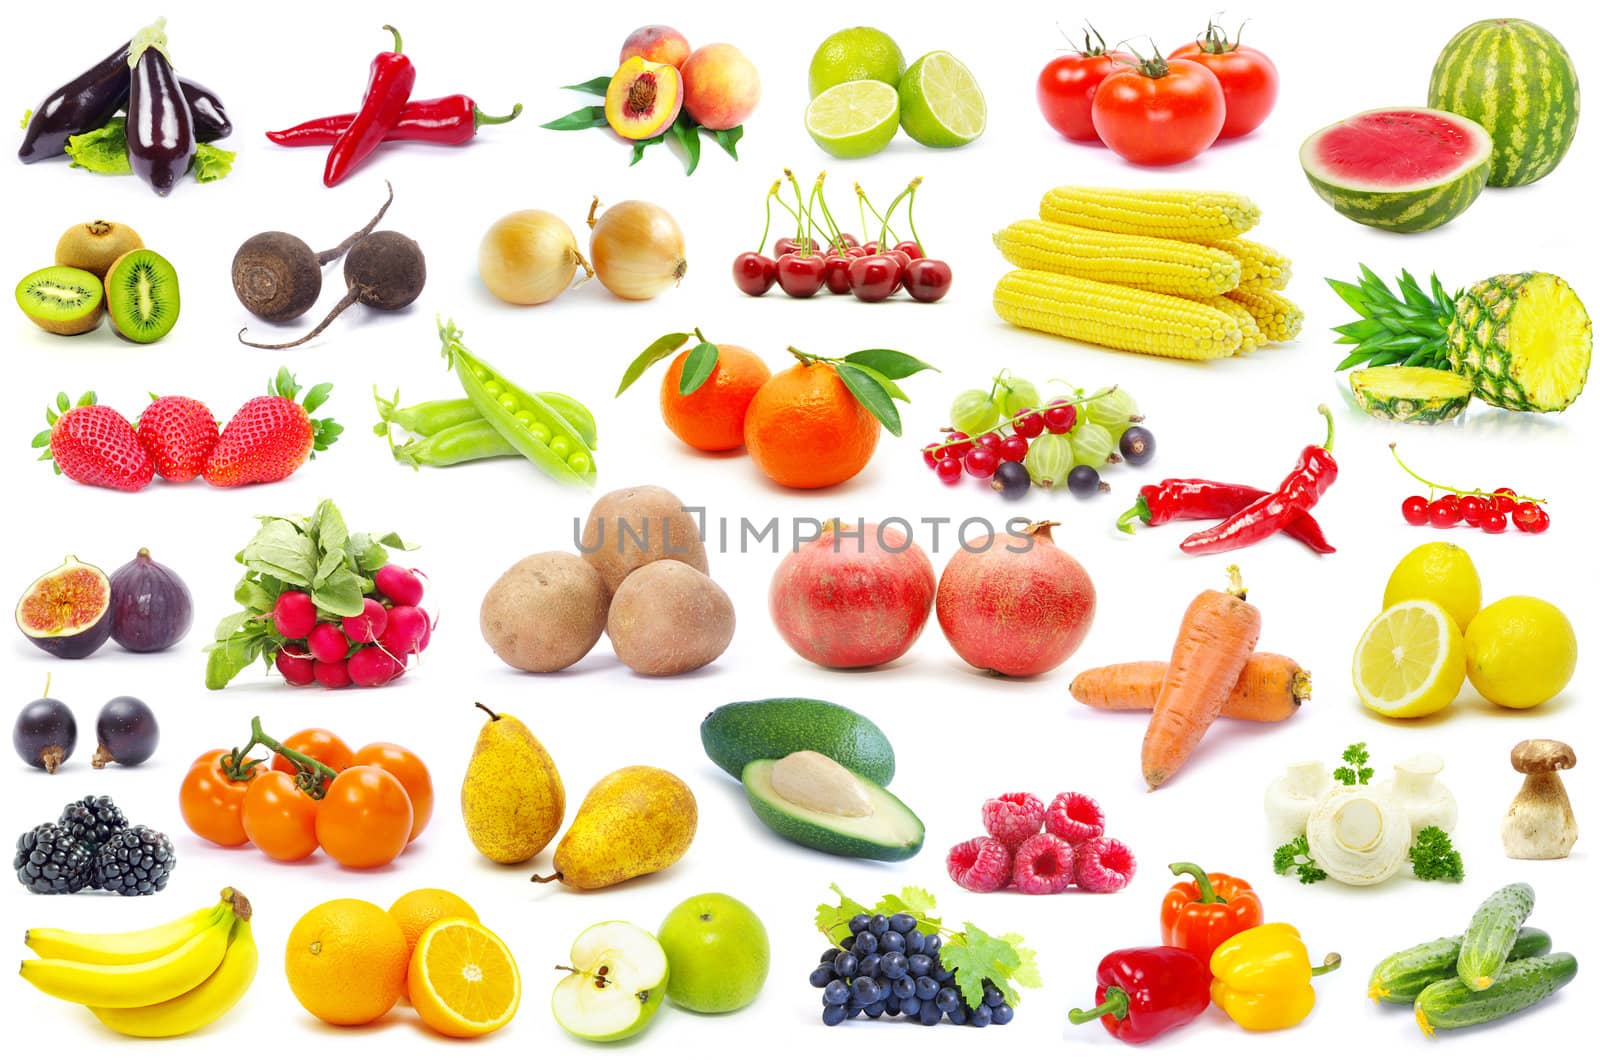 fruits and vegetable  by Pakhnyushchyy